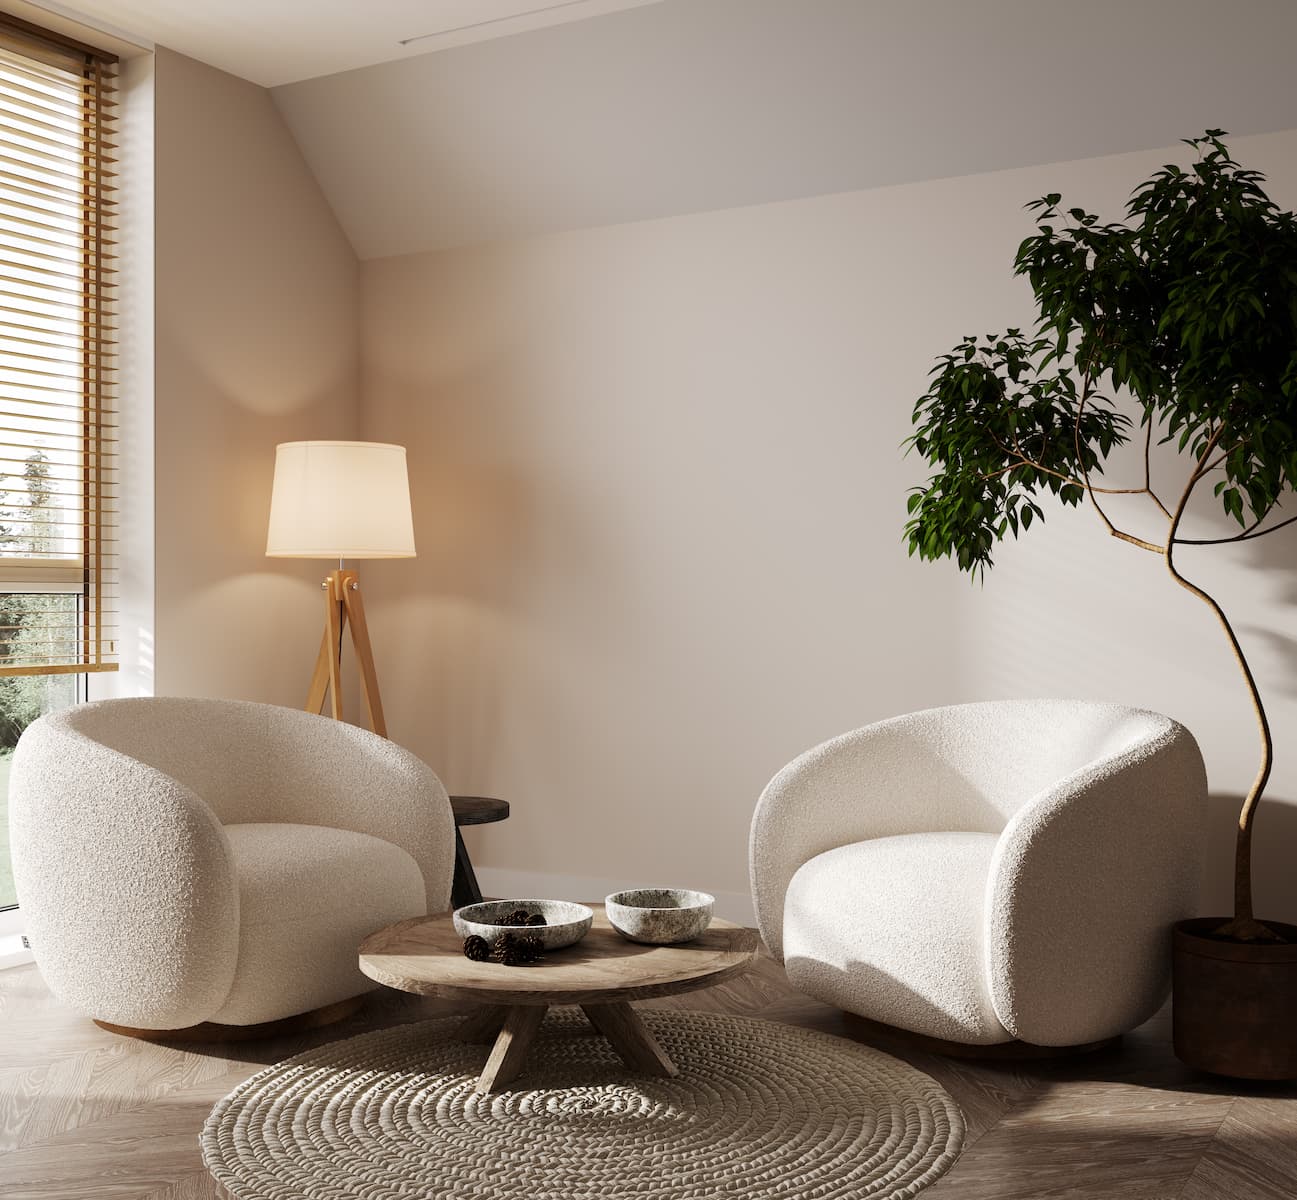 fauteuil-moderne-blanc-interieur-salon-confortable-fond-beige-rendu-3d (1)